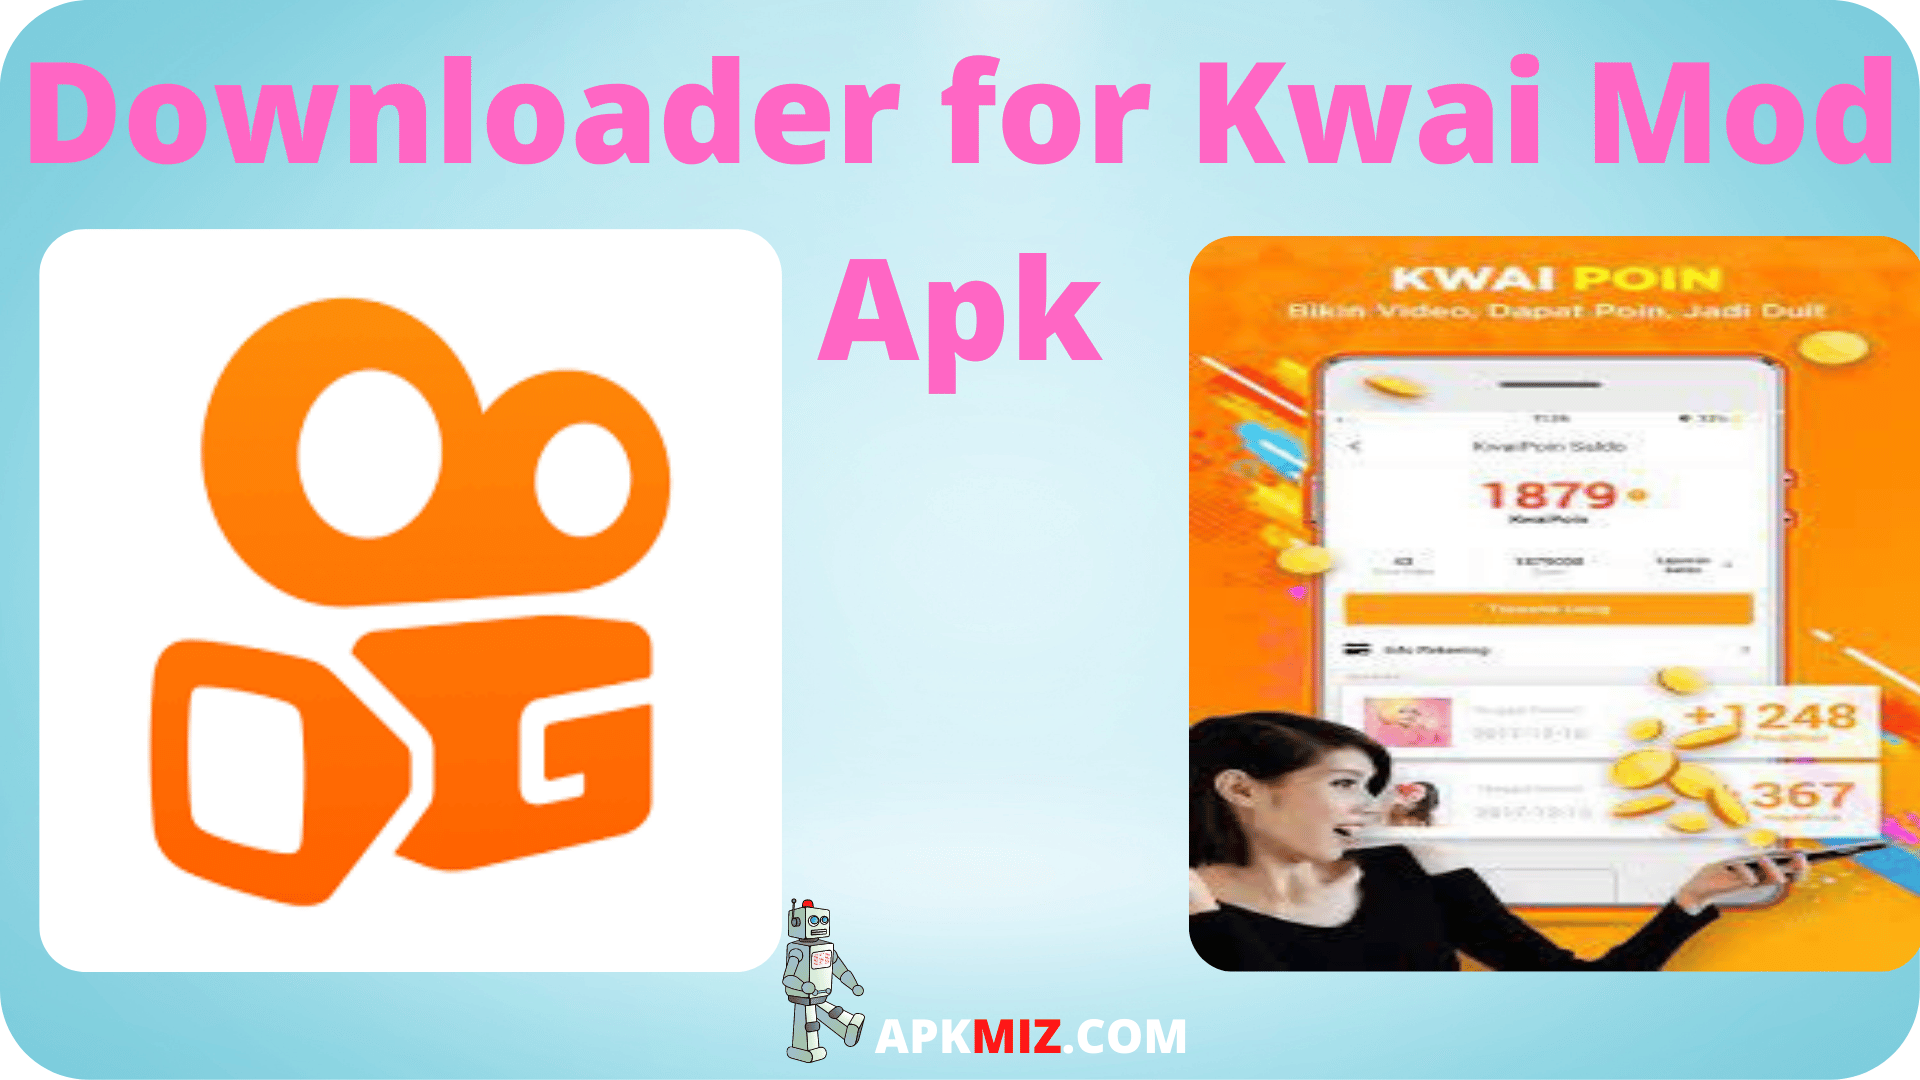 Downloader for Kwai Mod Apk